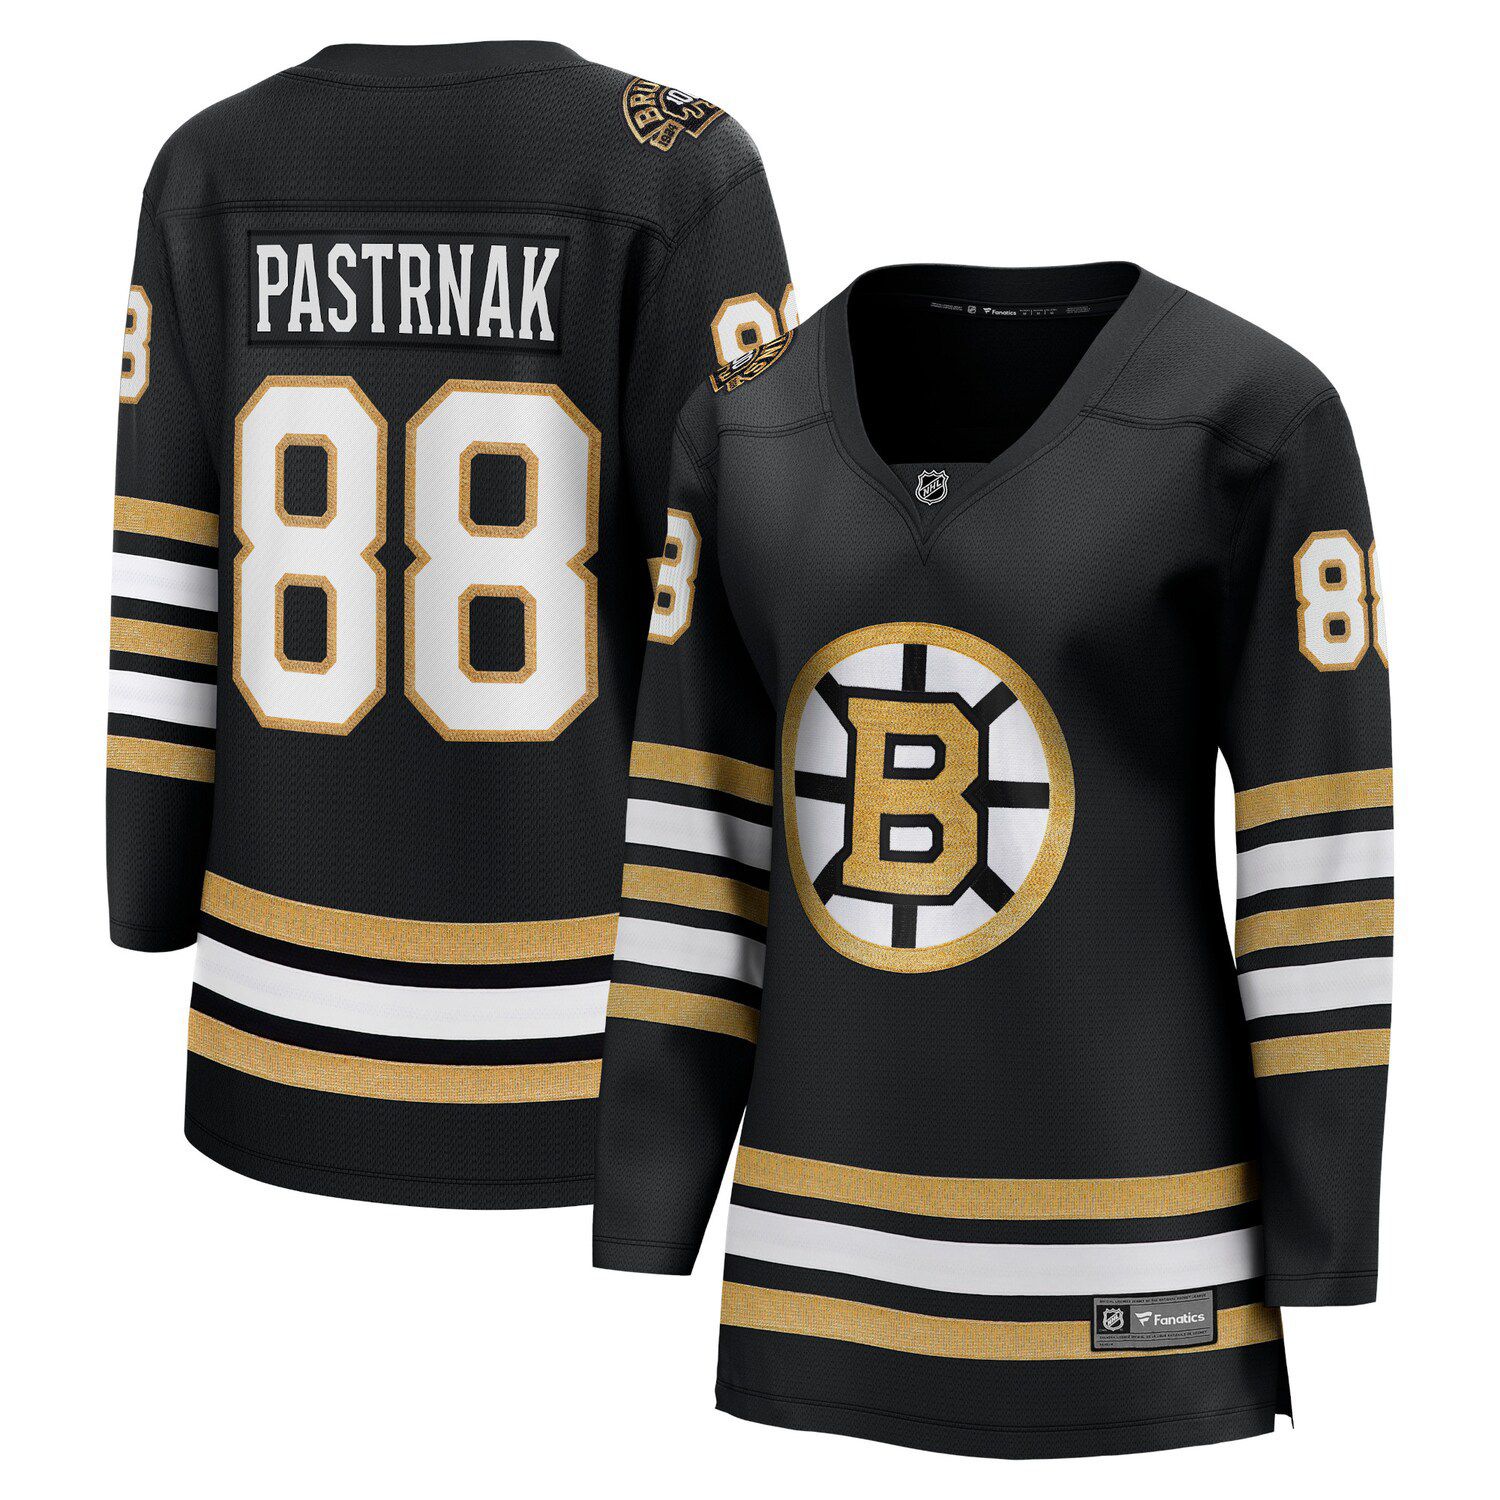 Boston Bruins women's jersey